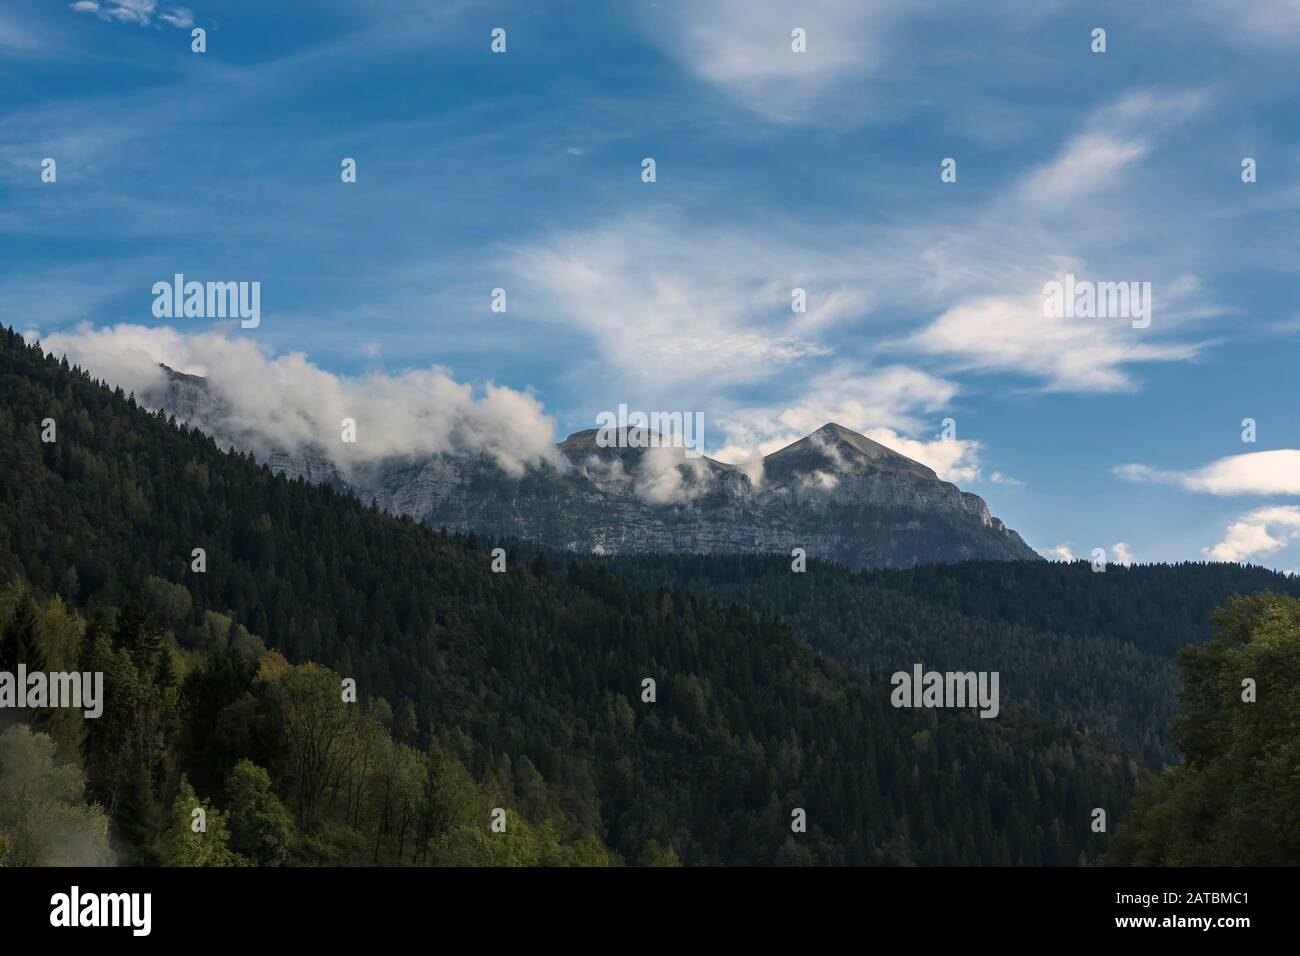 Monte Pavione, from Fiera di Primiero, Province of Trento, Italy Stock Photo